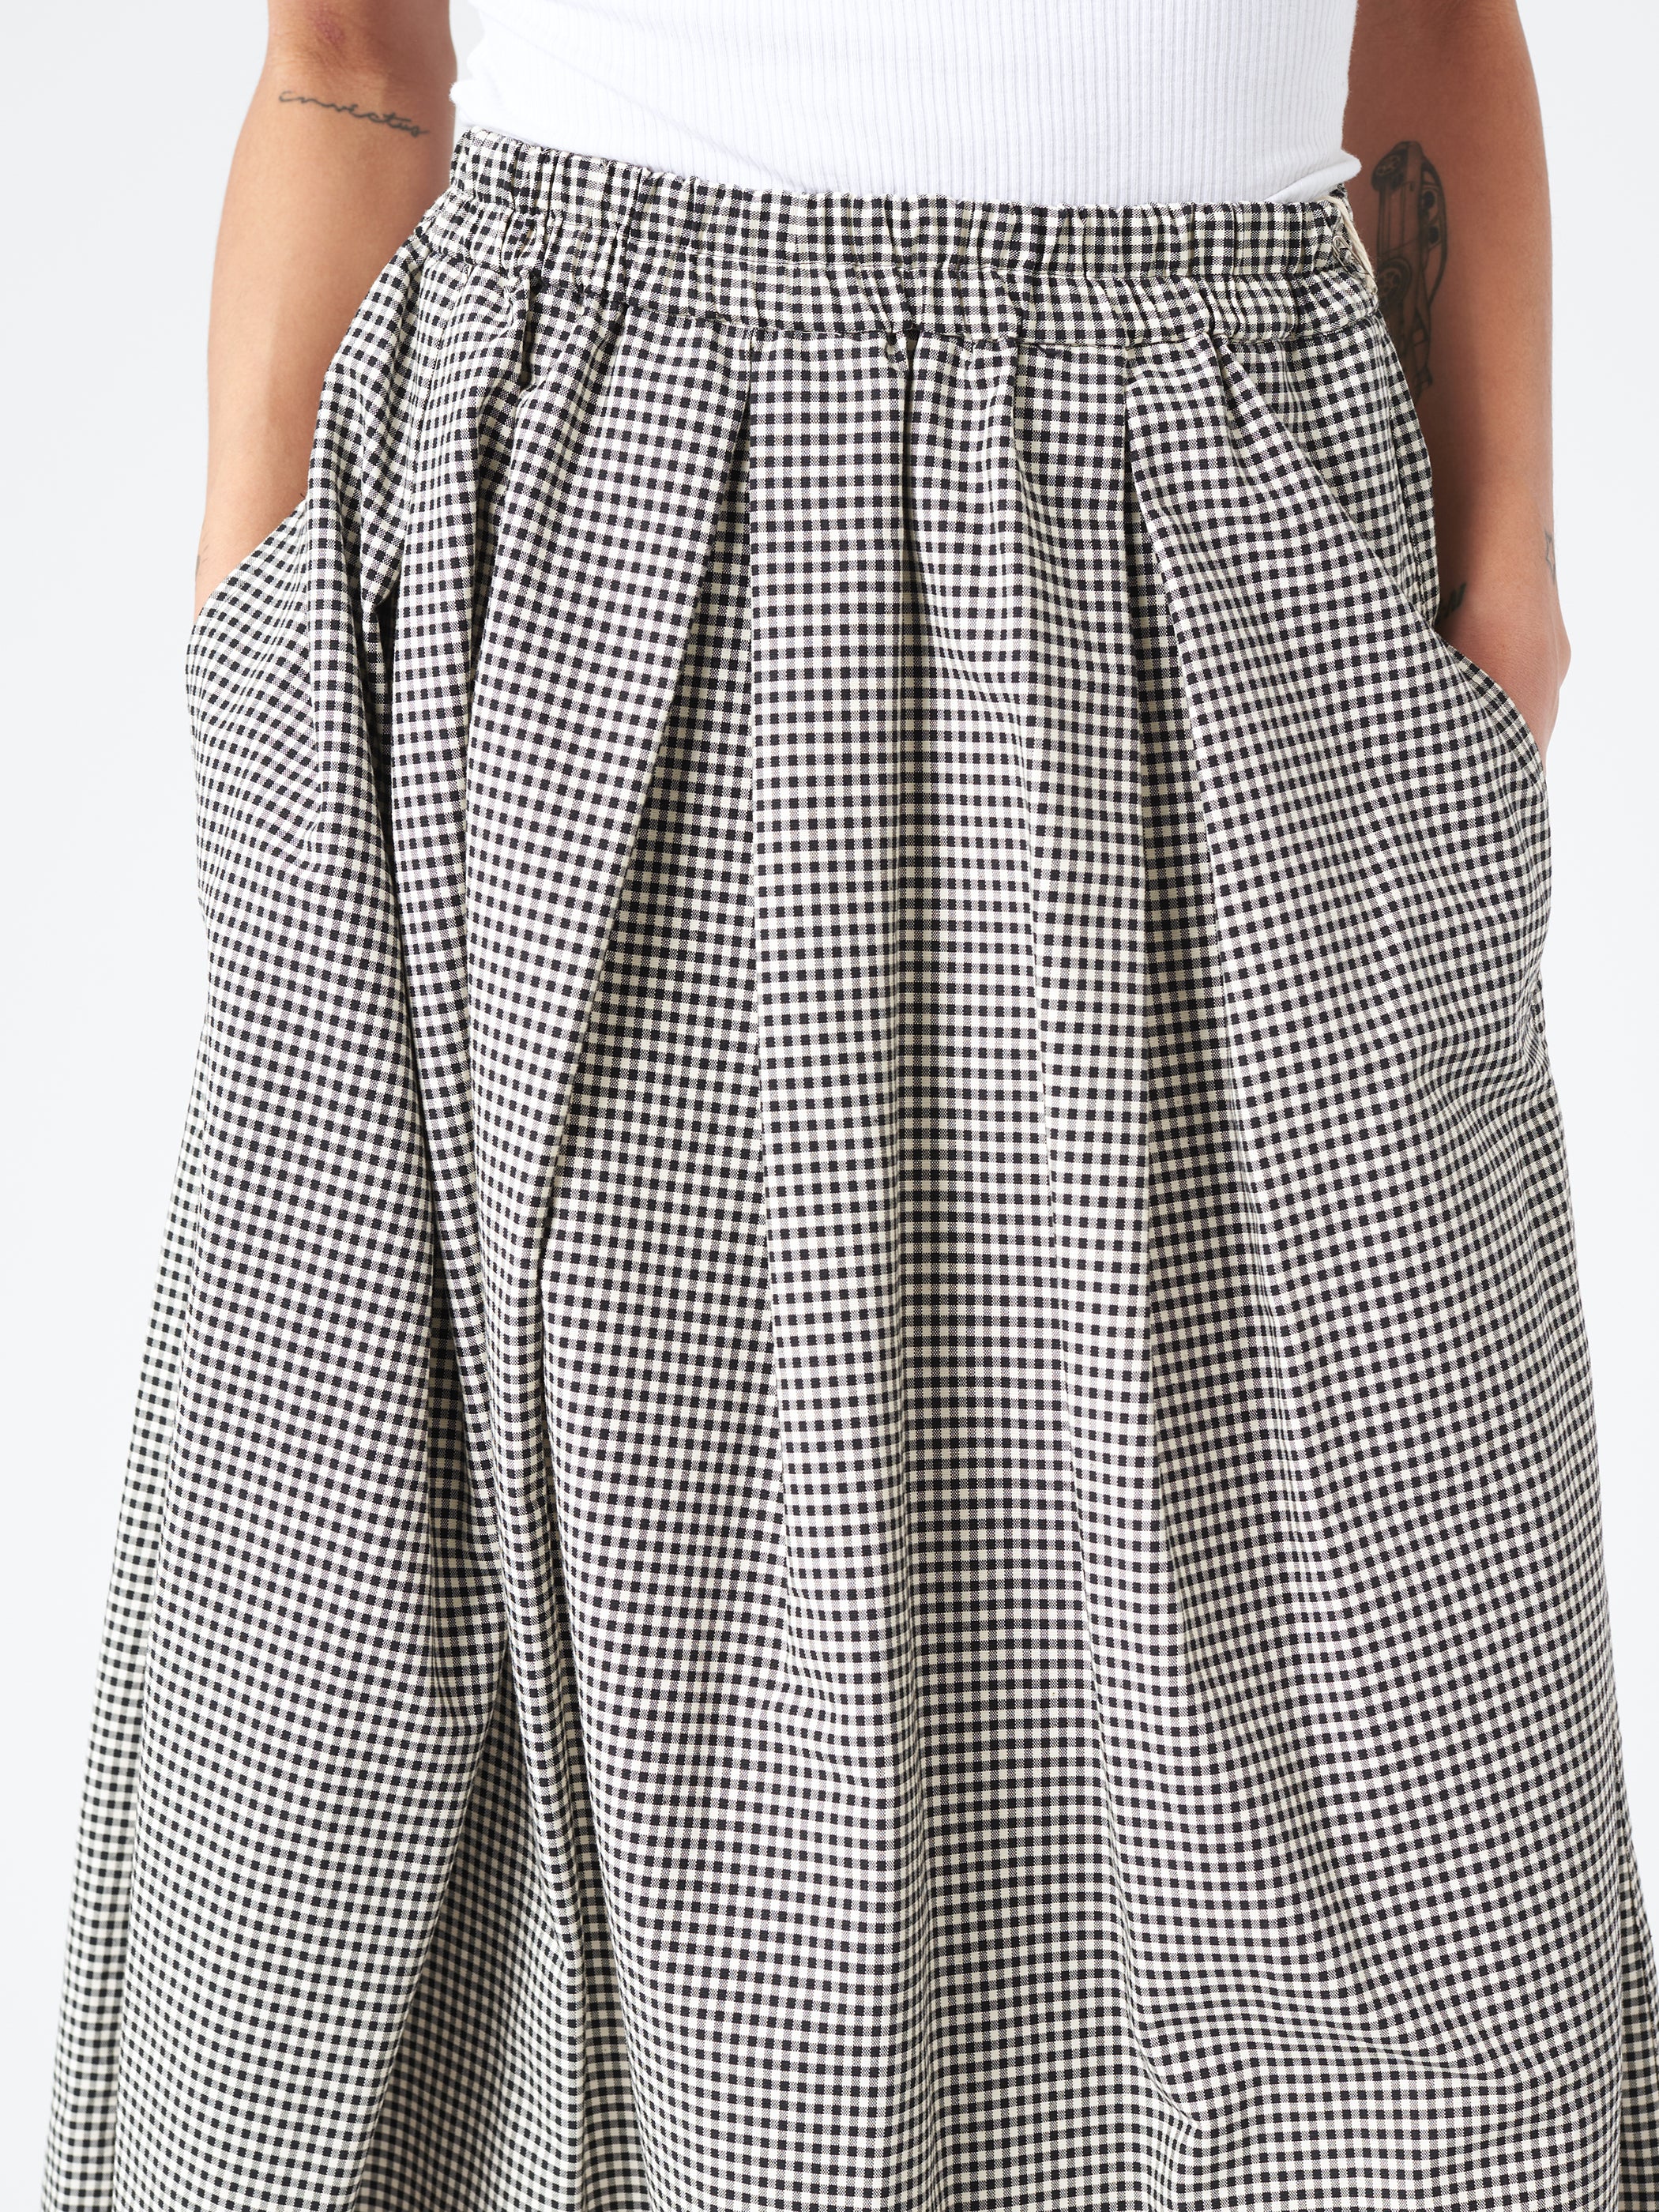 Gingham Oxford Box Tuck Skirt